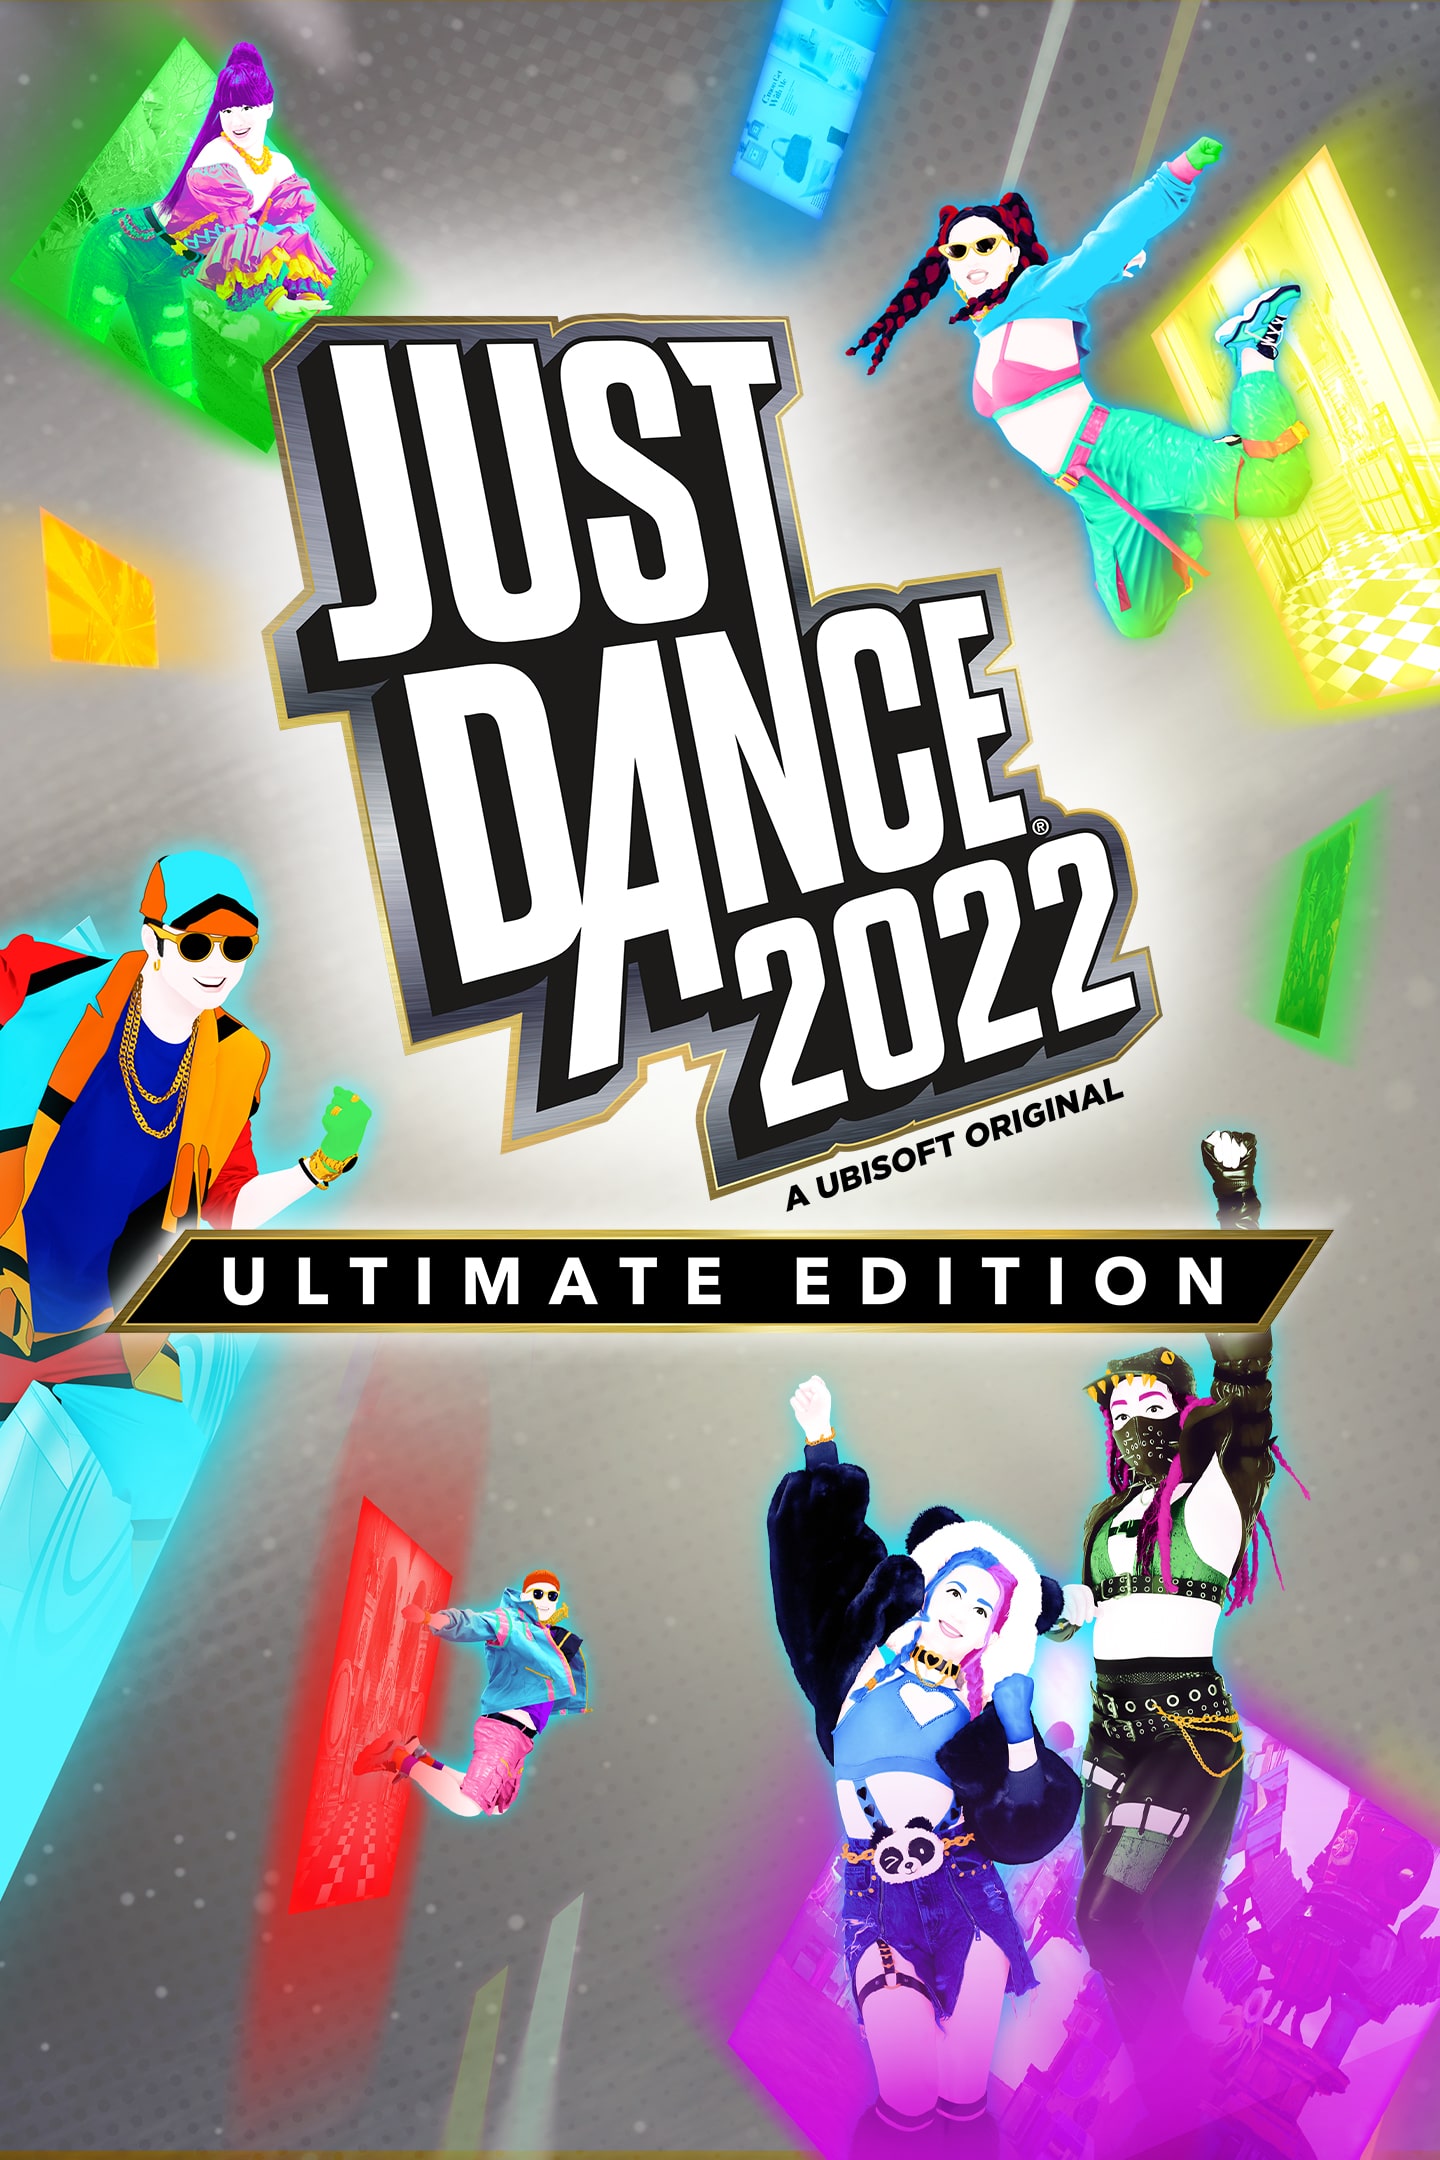 Dance® 2022